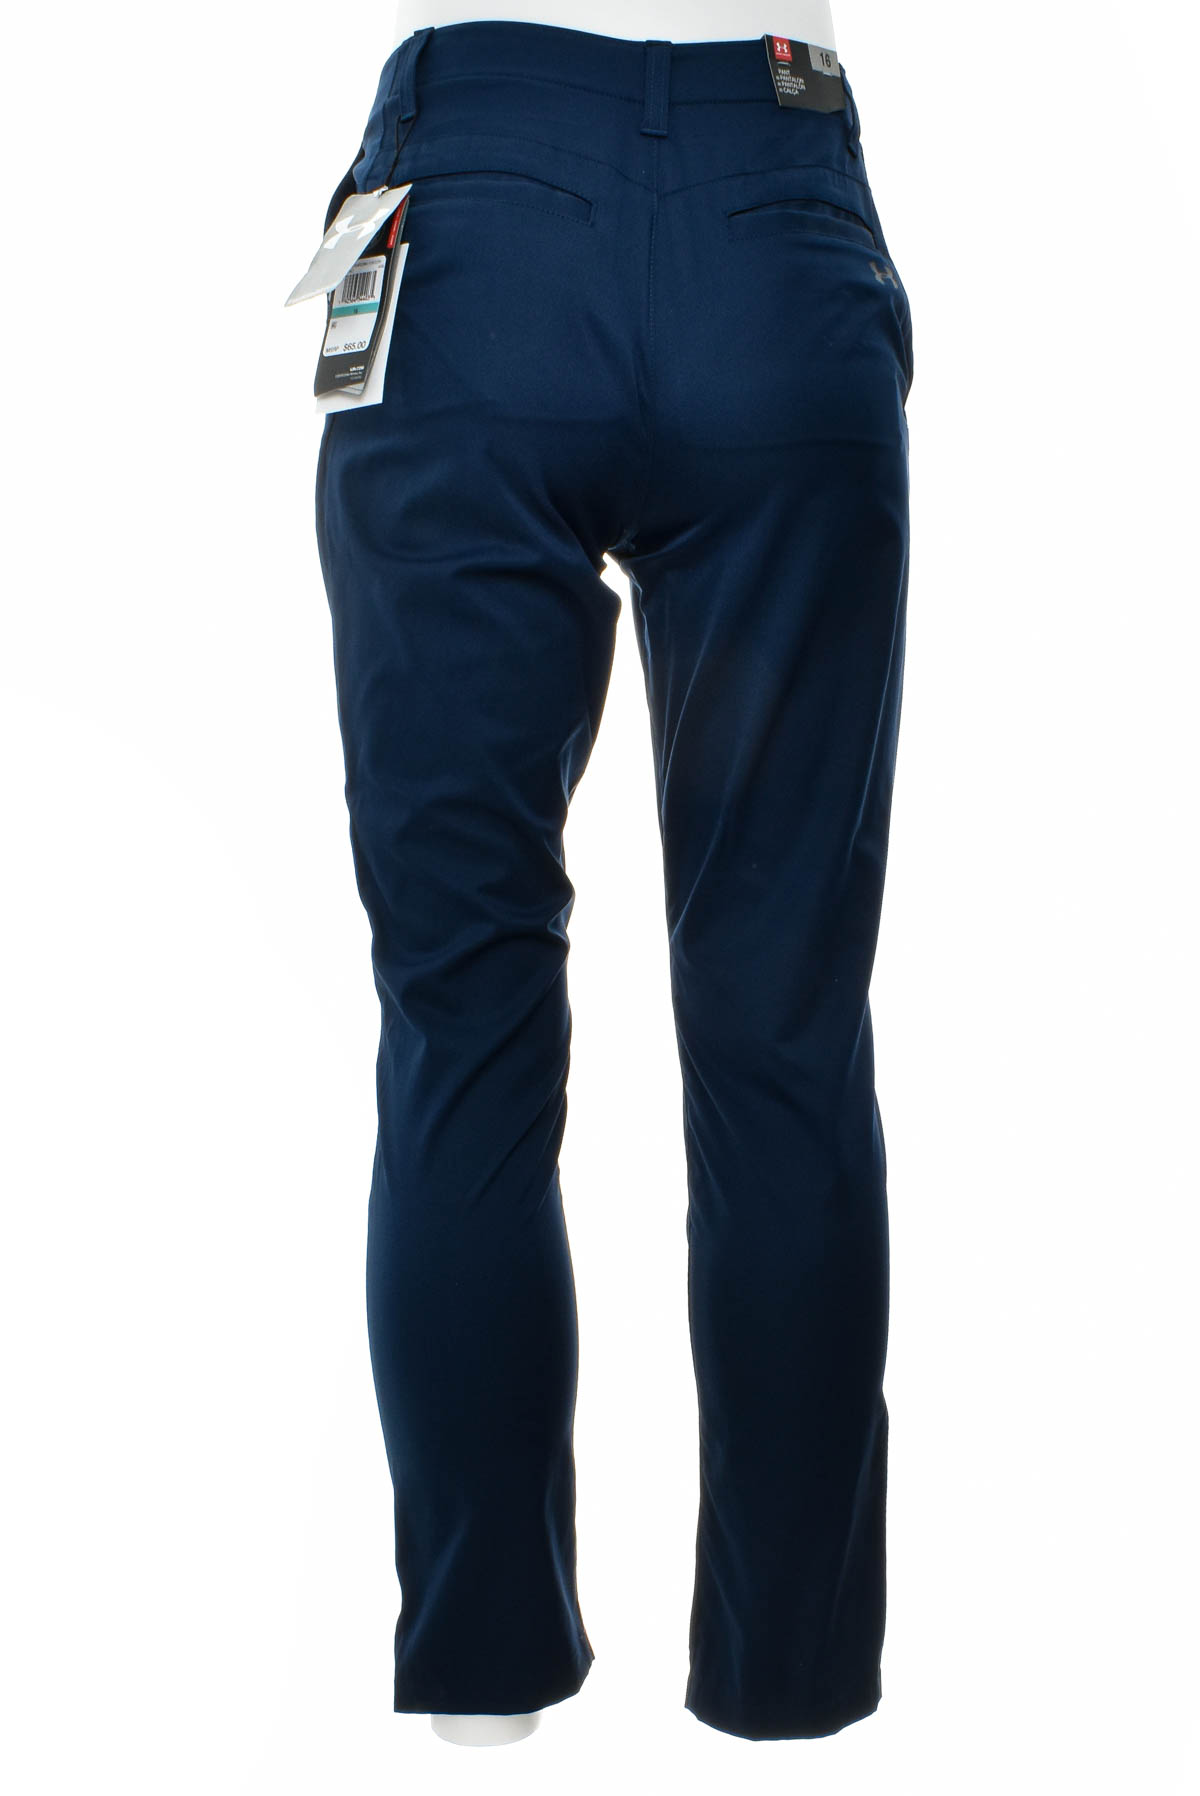 Pantalon pentru bărbați - UNDER ARMOUR - 1